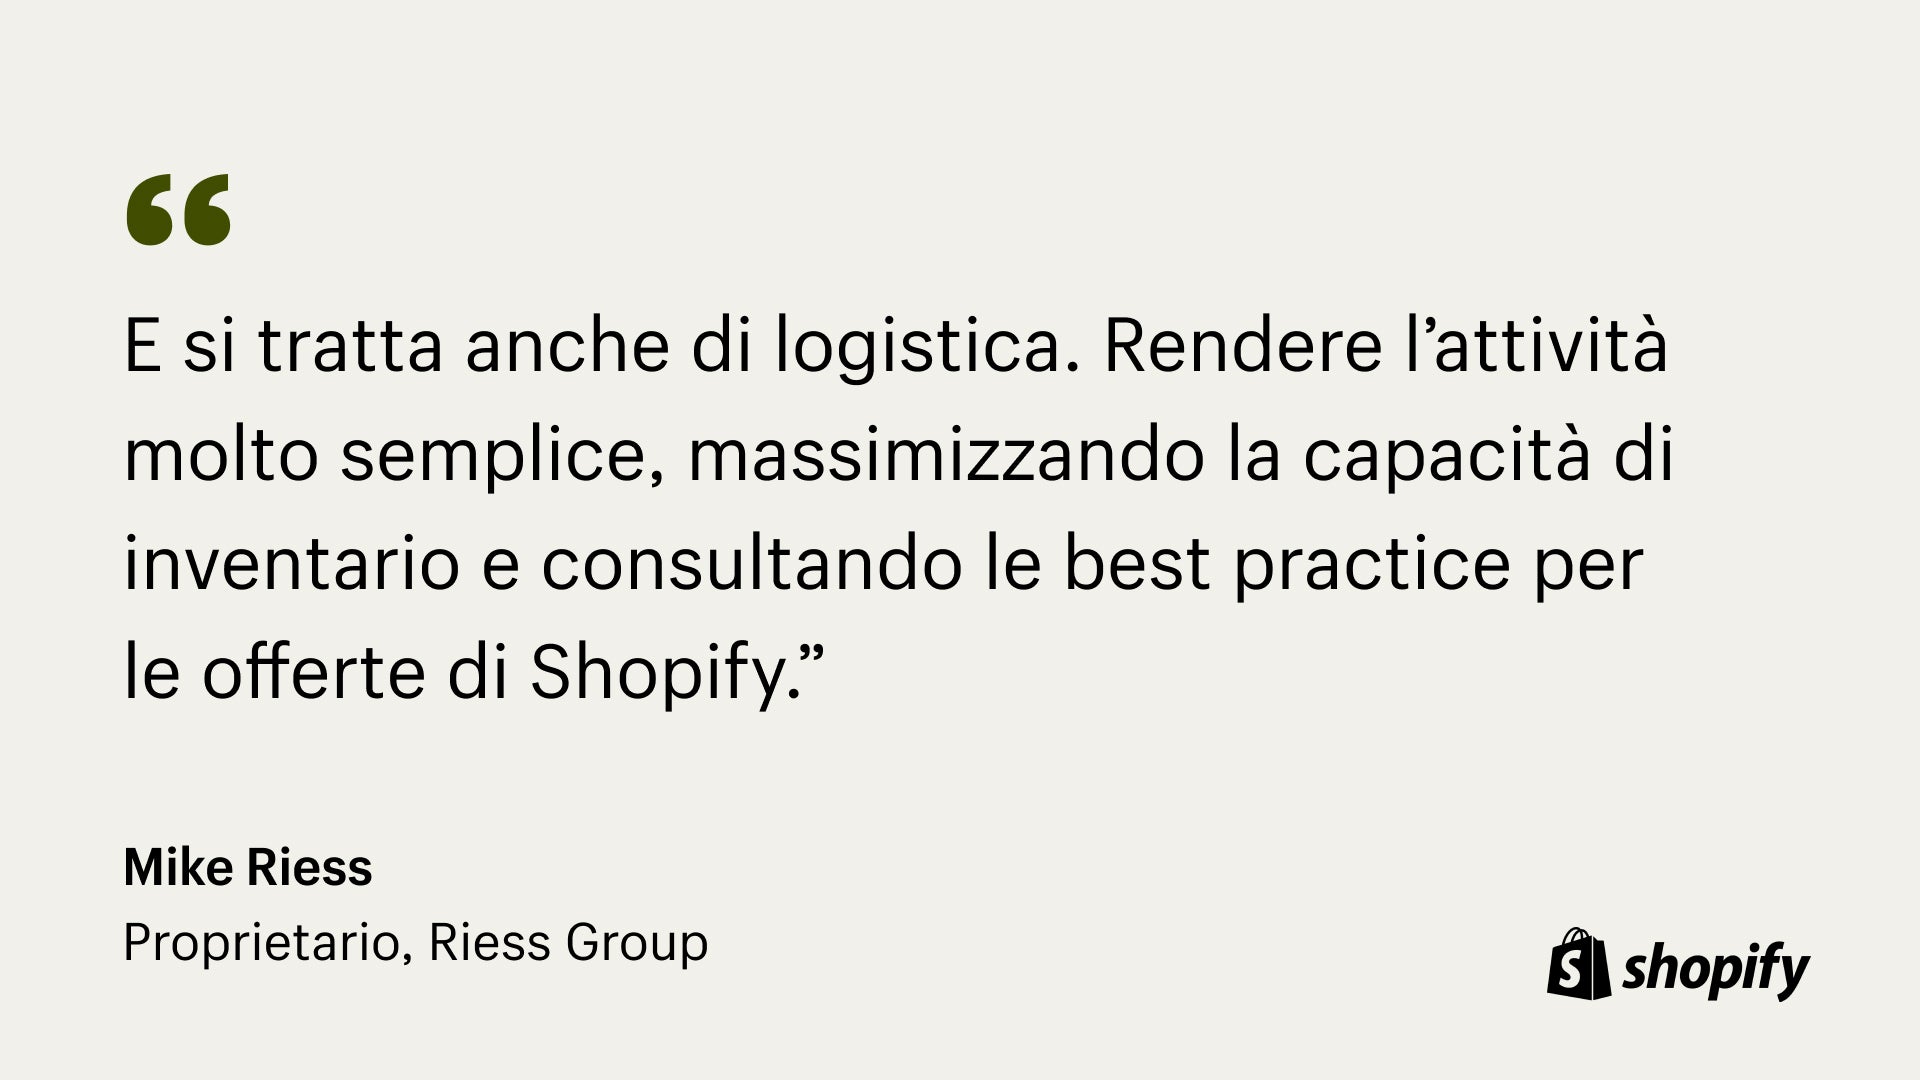 Image della citazione di Mark Riess, proprietario di Riess, che afferma: "Si tratta di molta logistica. Far funzionare la propria attività in modo davvero semplice, massimizzare la capacità di inventario e consultare le migliori pratiche per le offerte di Shopify".